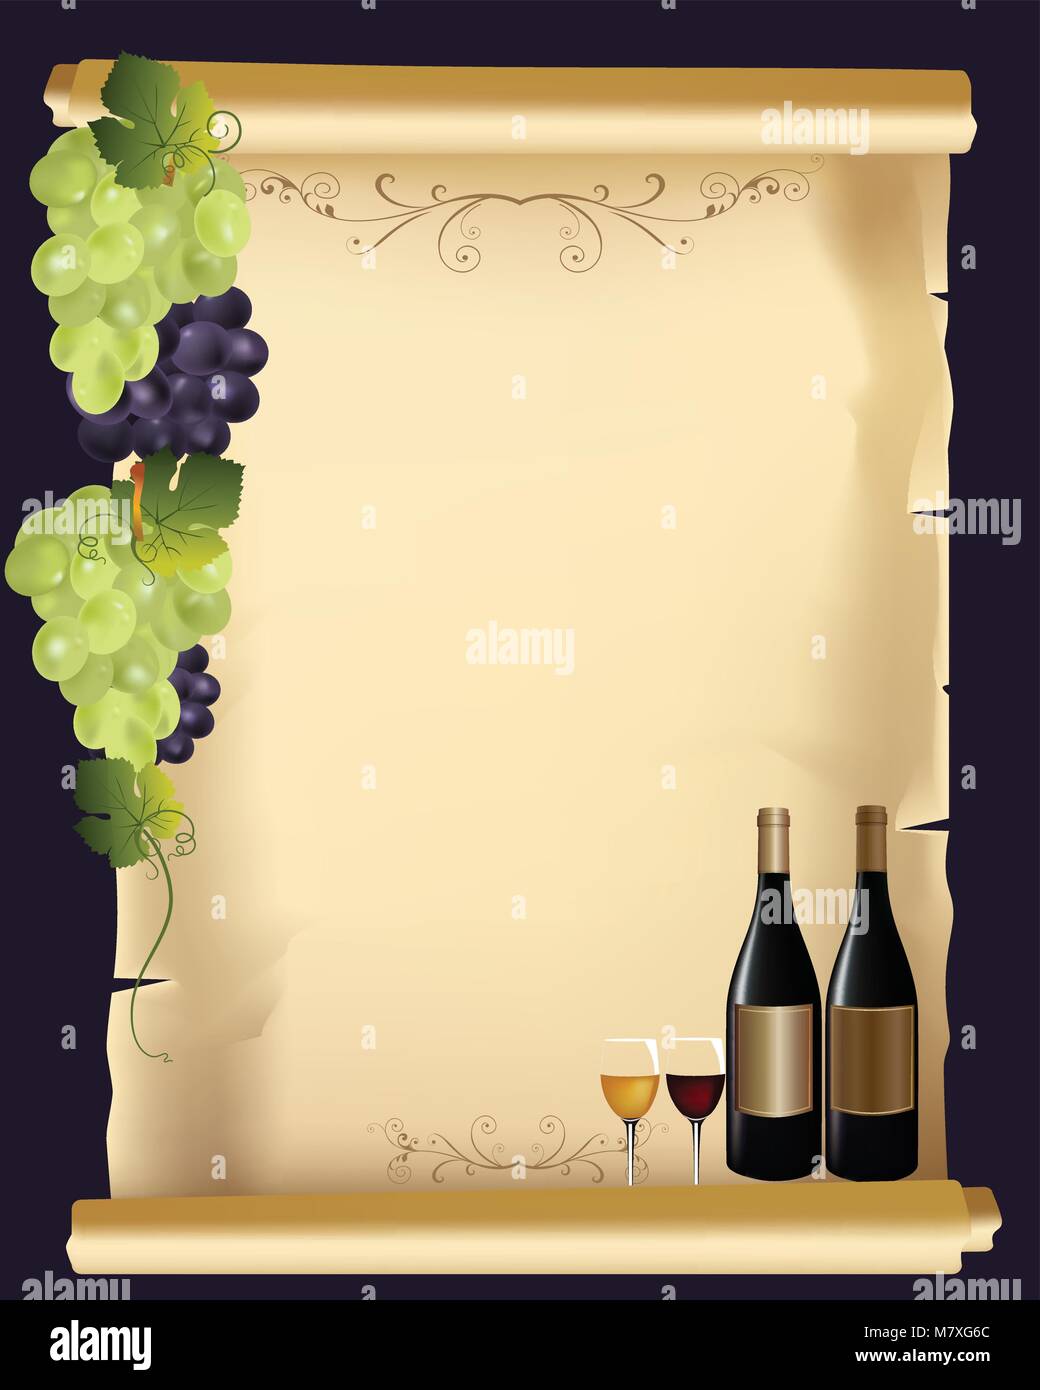 Menú de bebidas elegante tarjeta con vino y botella de vidrio Ilustración del Vector